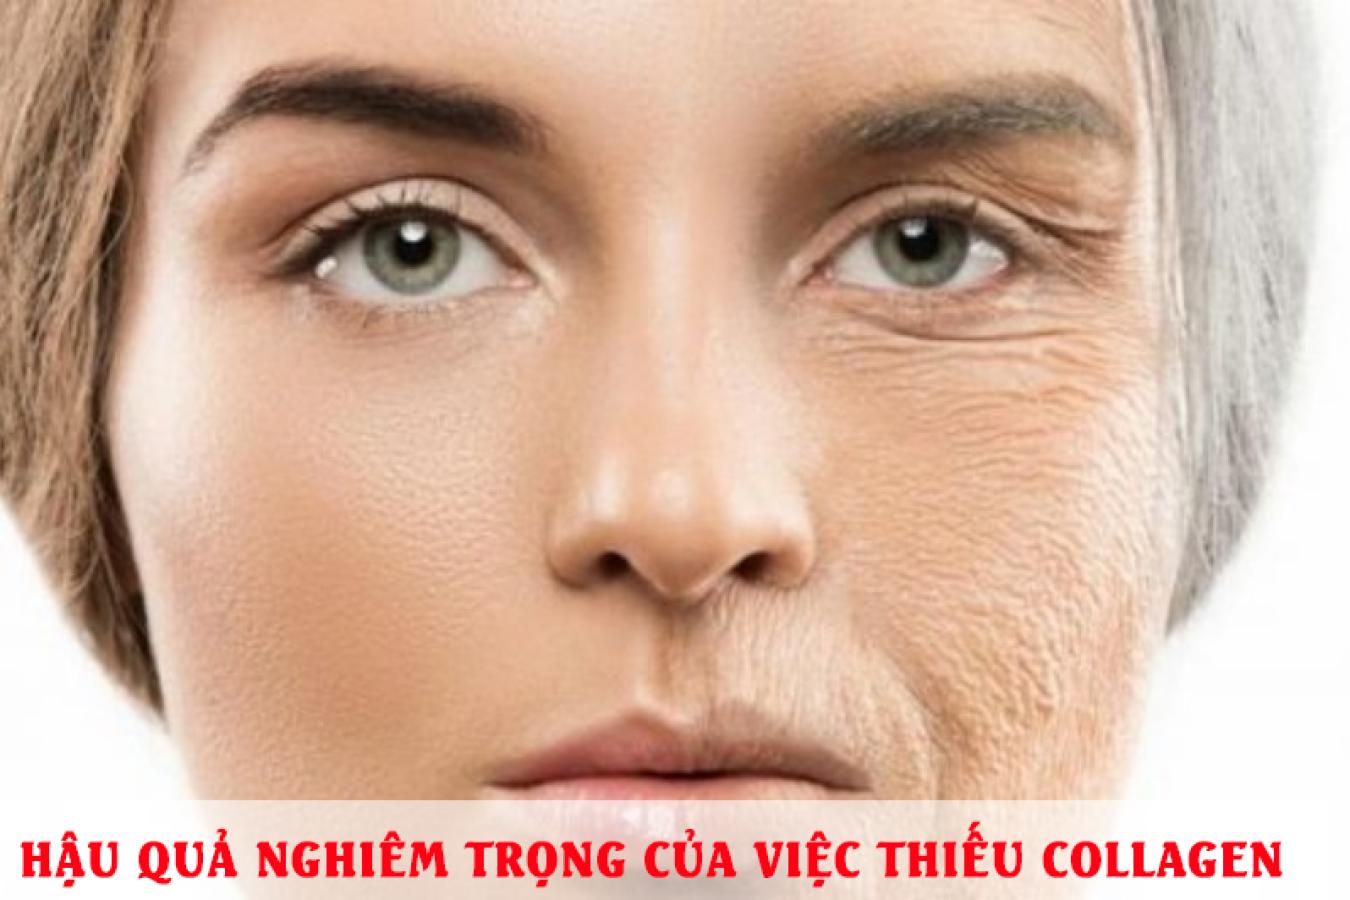 Hậu quả nghiêm trọng của việc thiếu collagen